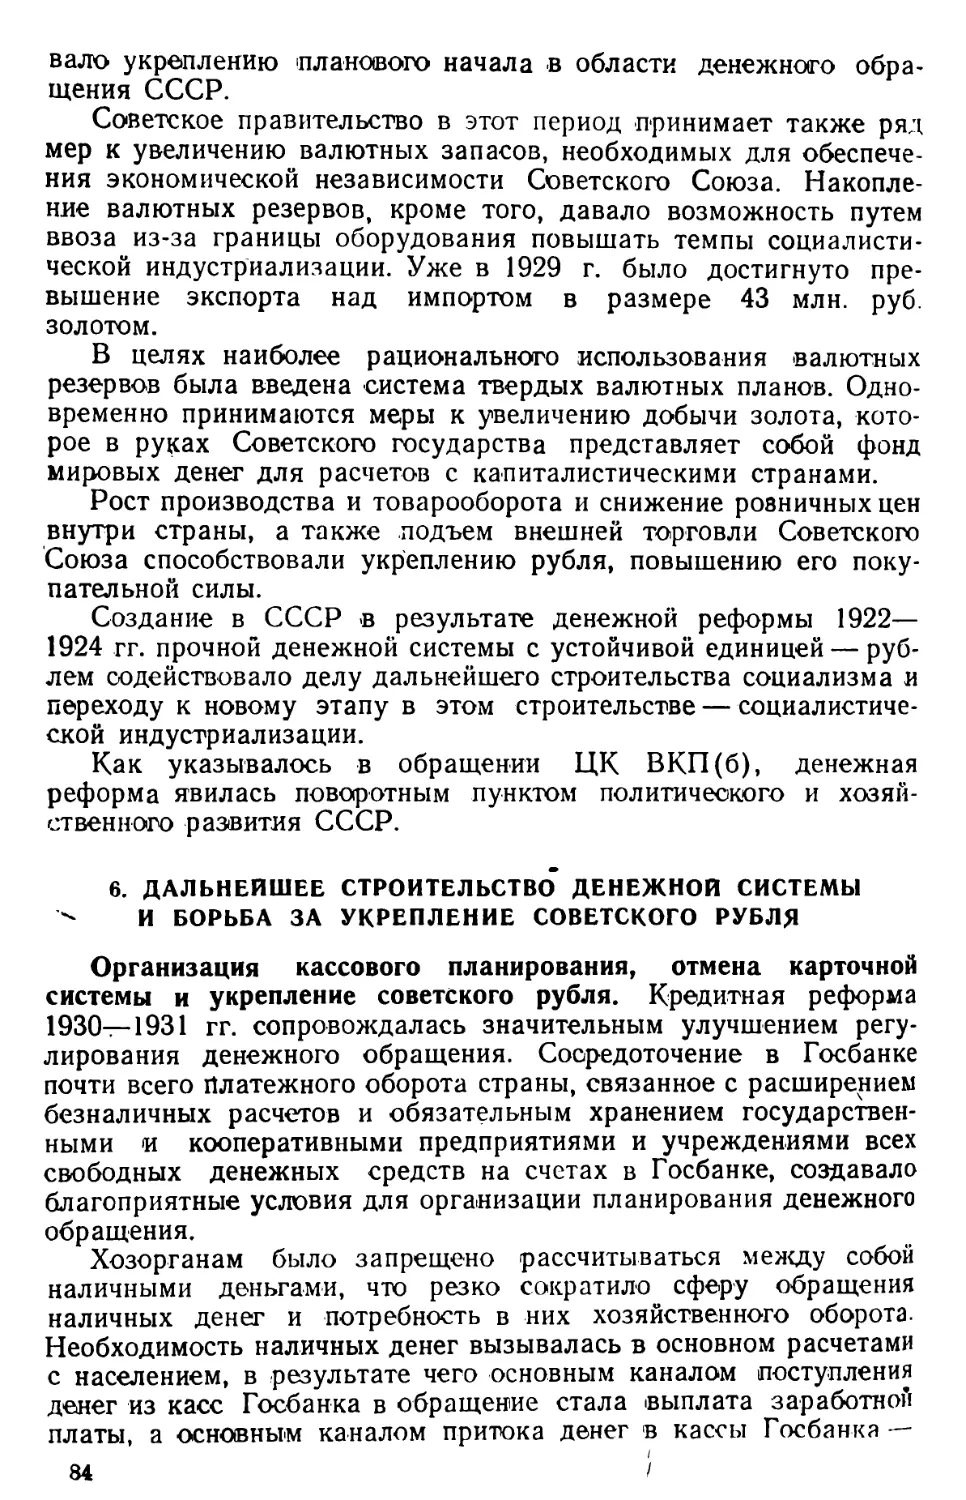 б. Дальнейшее строительство денежной системы и борьба за укрепление советского рубля